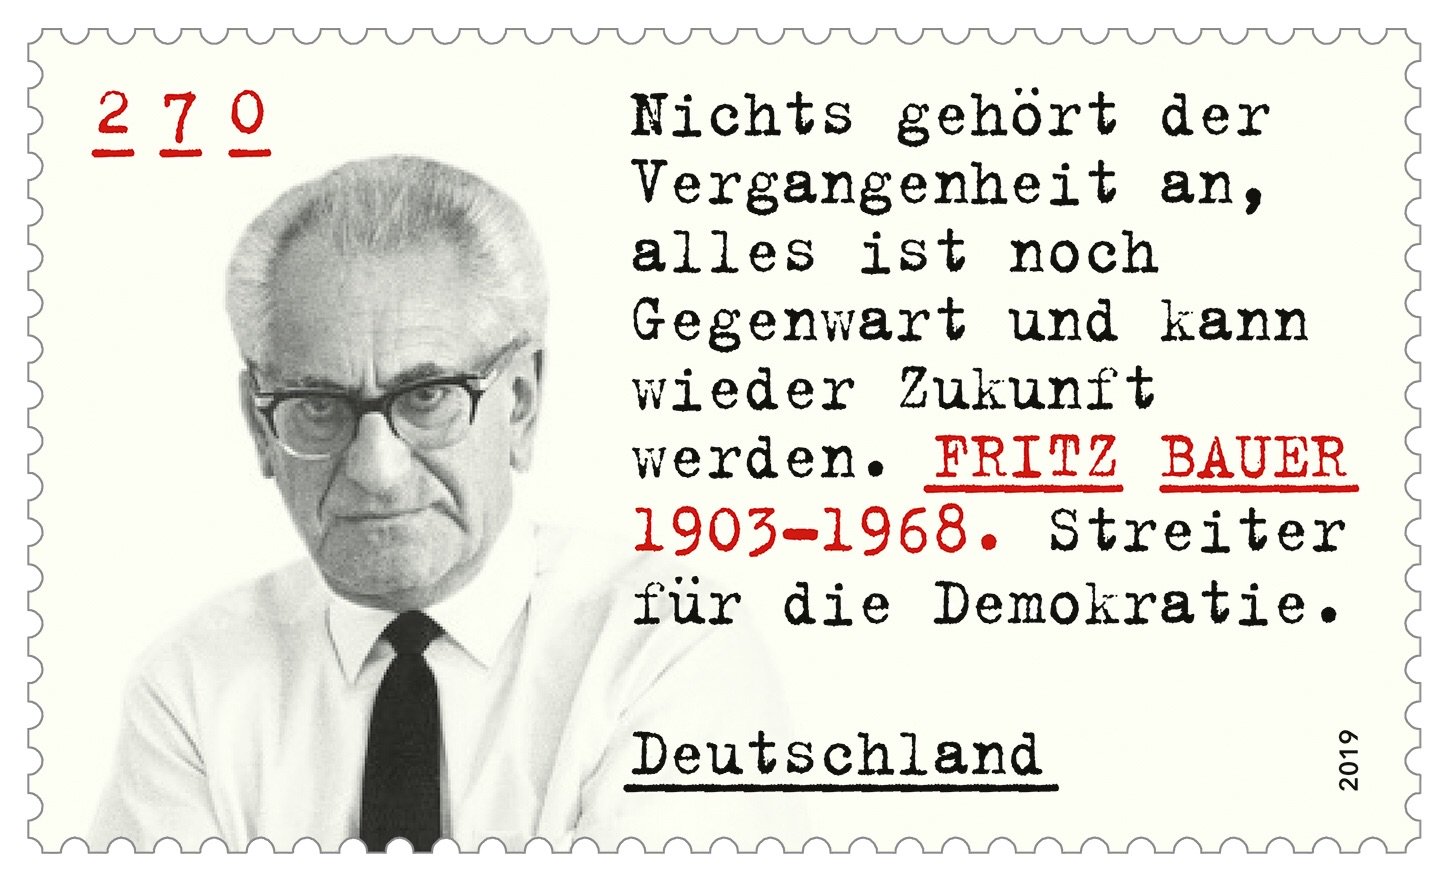 In der Serie „Aufrechte Demokraten“ wird Fritz Bauer mit einer Briefmarke geehrt.